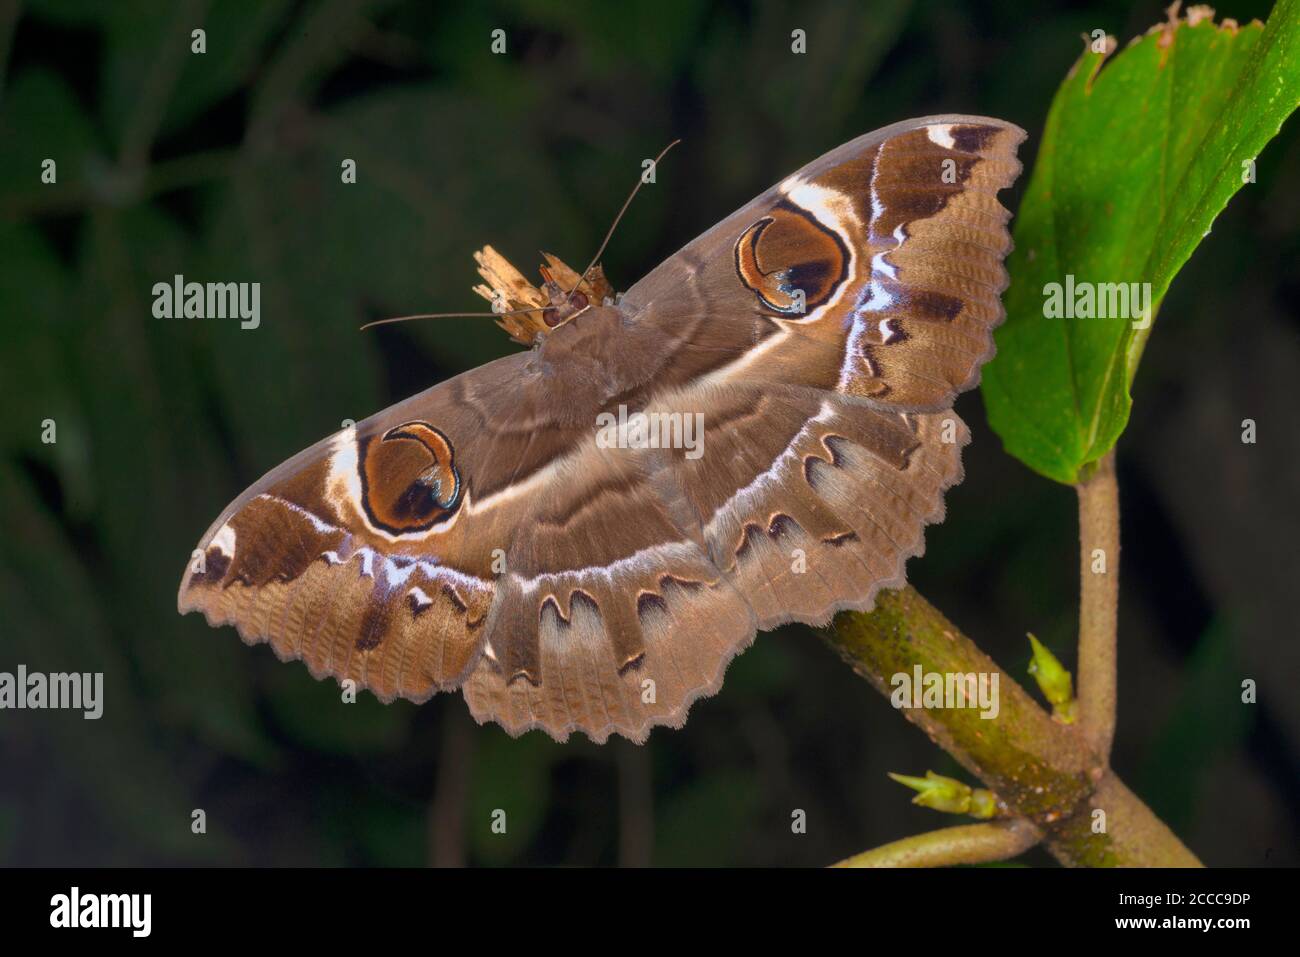 Owl Moth species at Amboli, Maharashtra, India Stock Photo